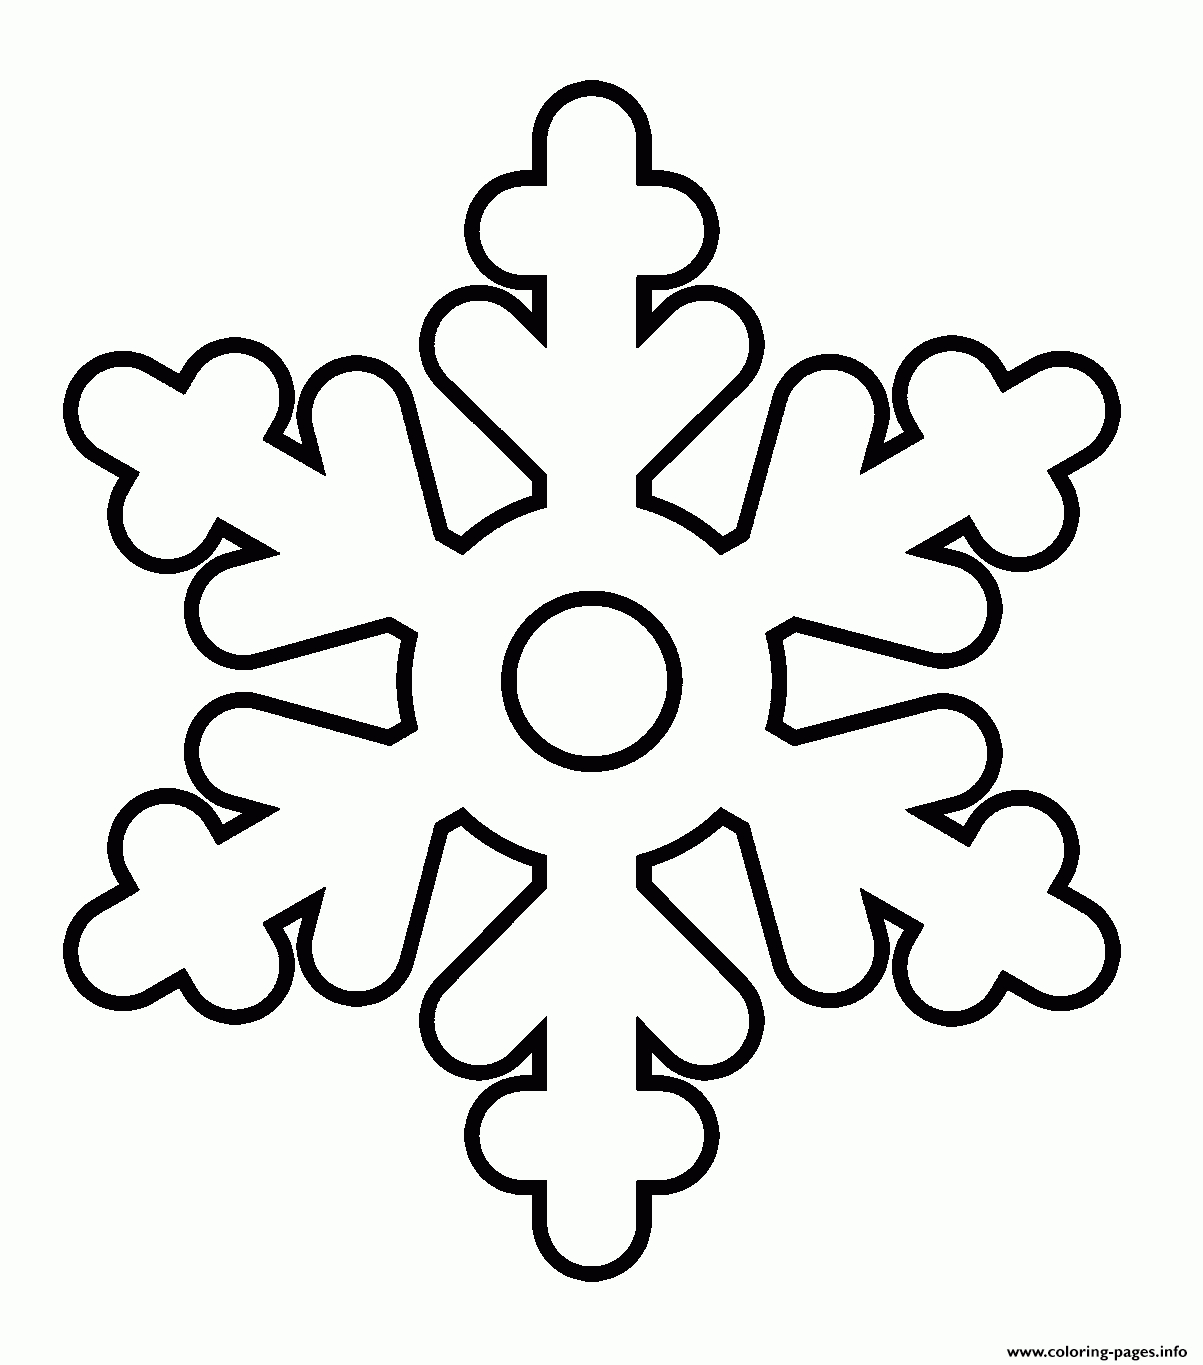 Snowflake Easy Kid Coloring Pages Printable - Free Printable Snowflakes